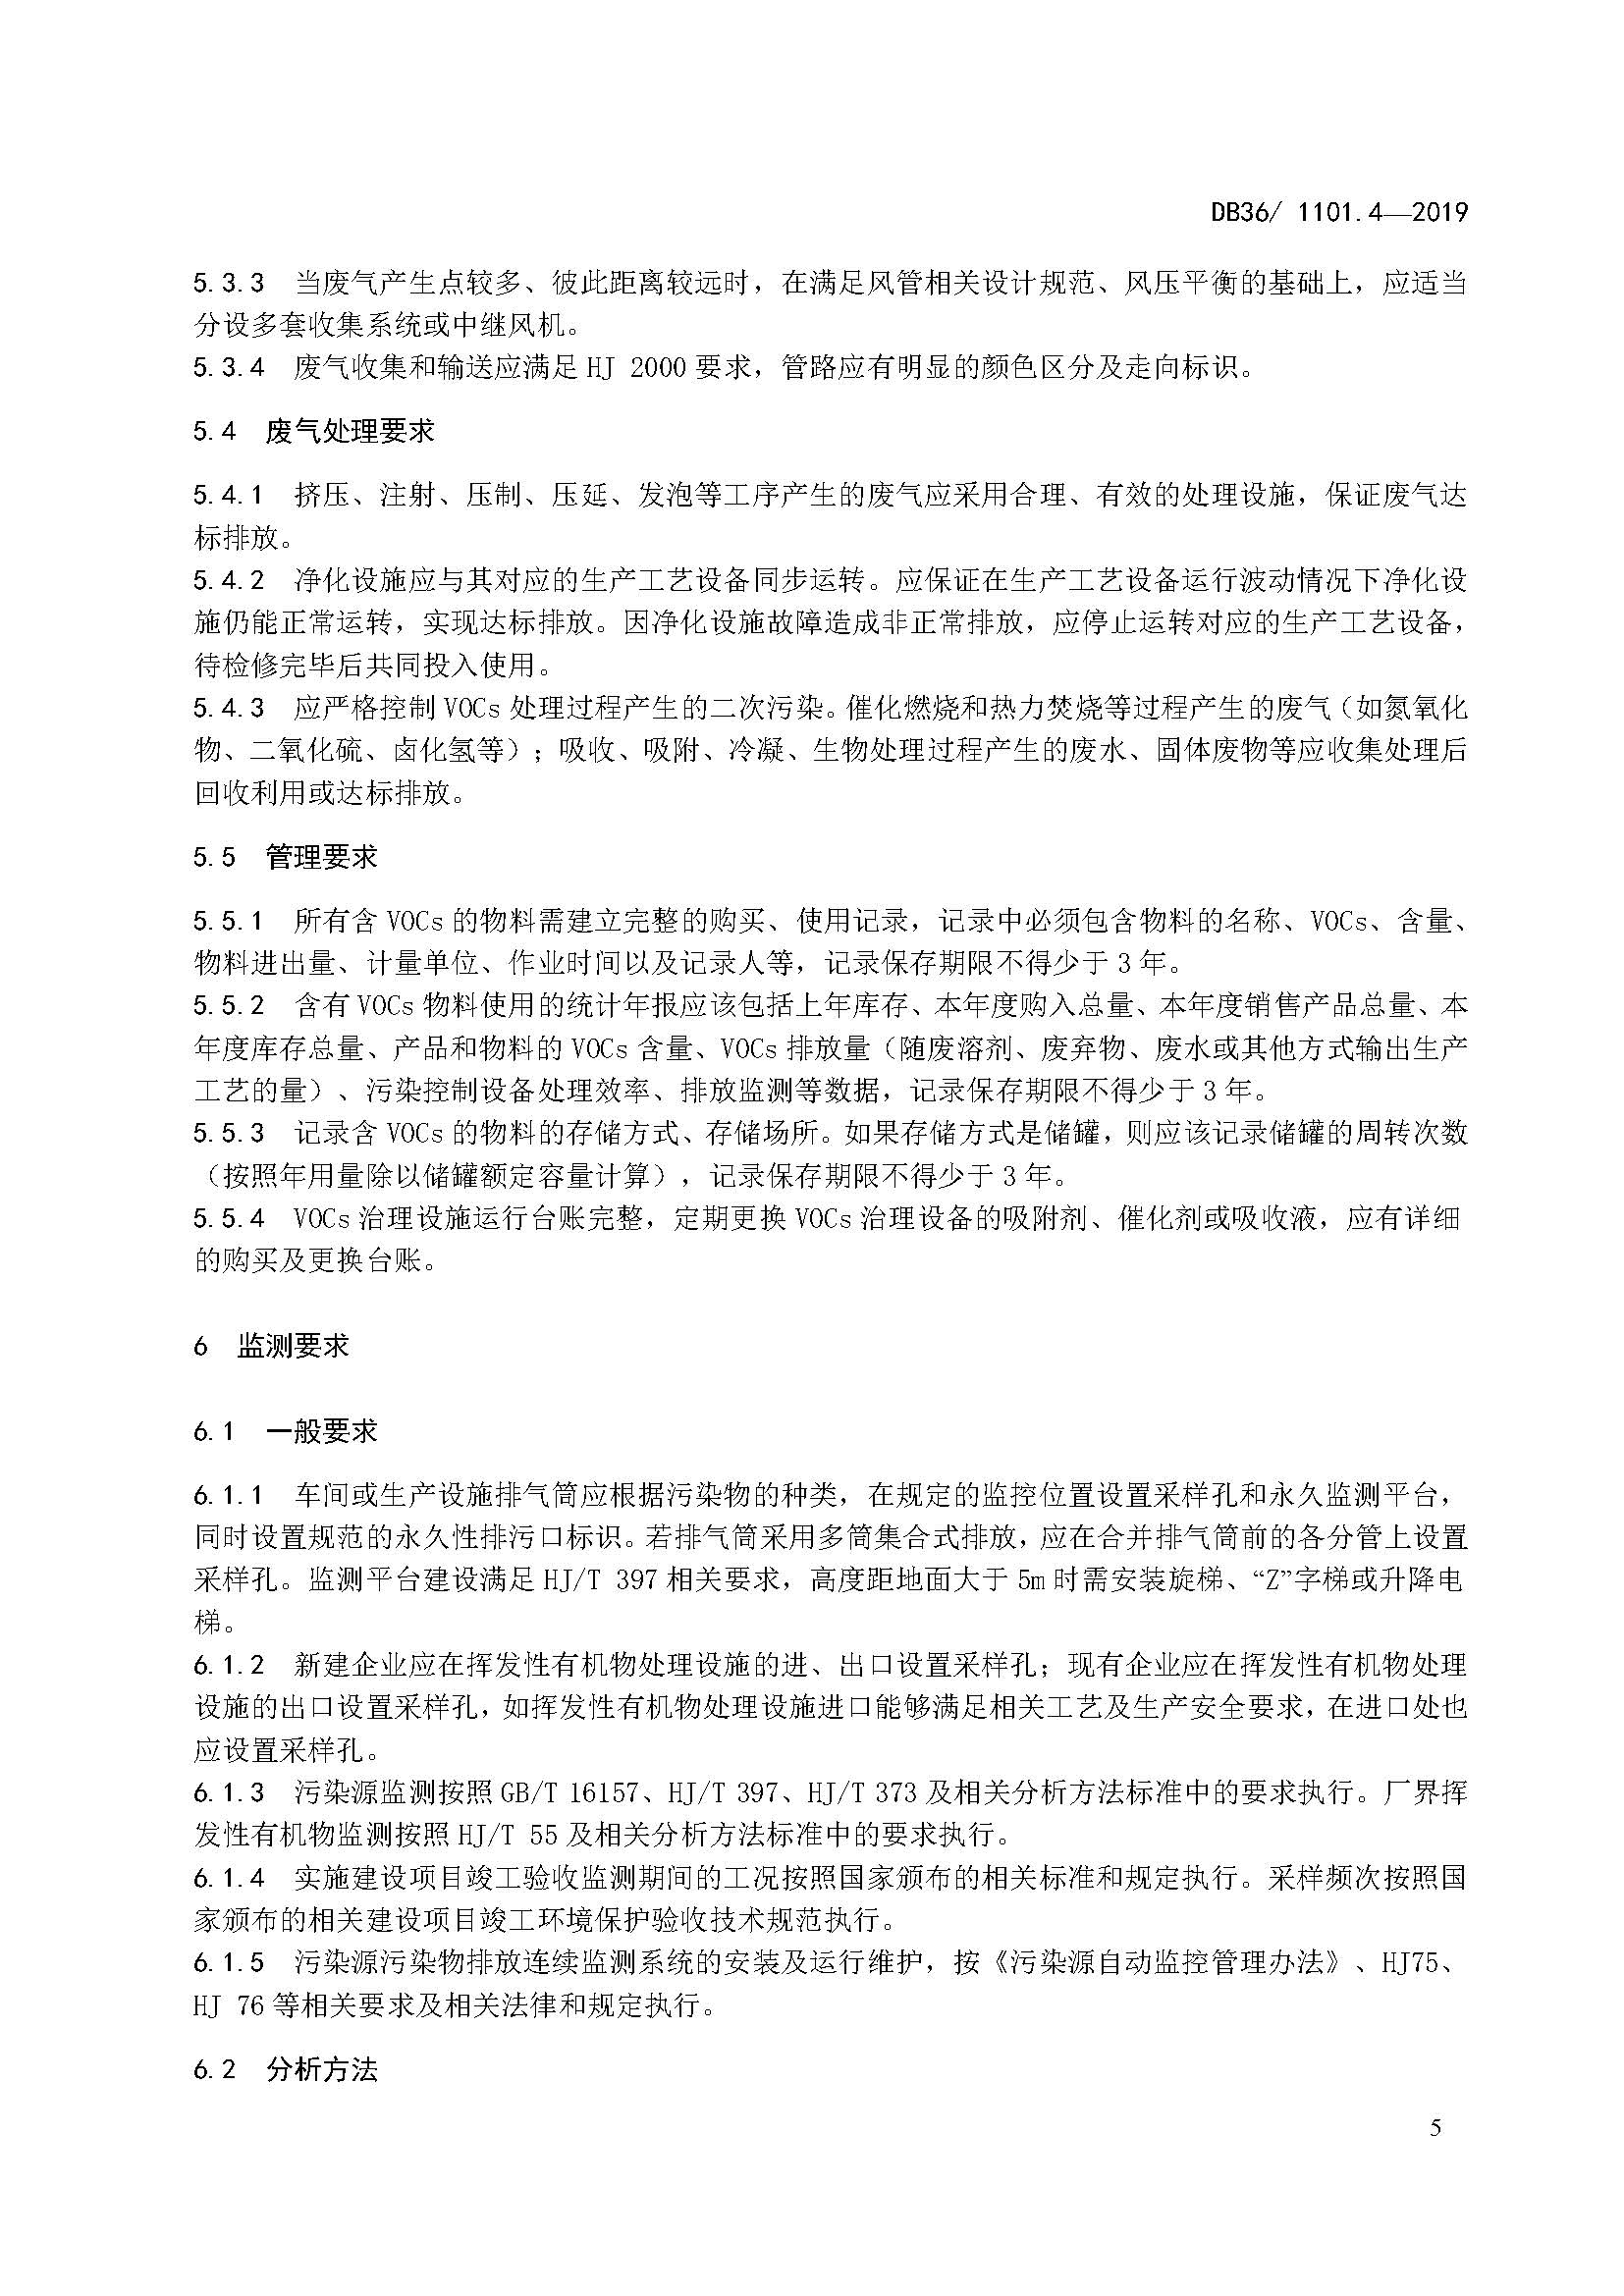 江西省塑料制品业挥发性有机物排放标准_页面_11.jpg